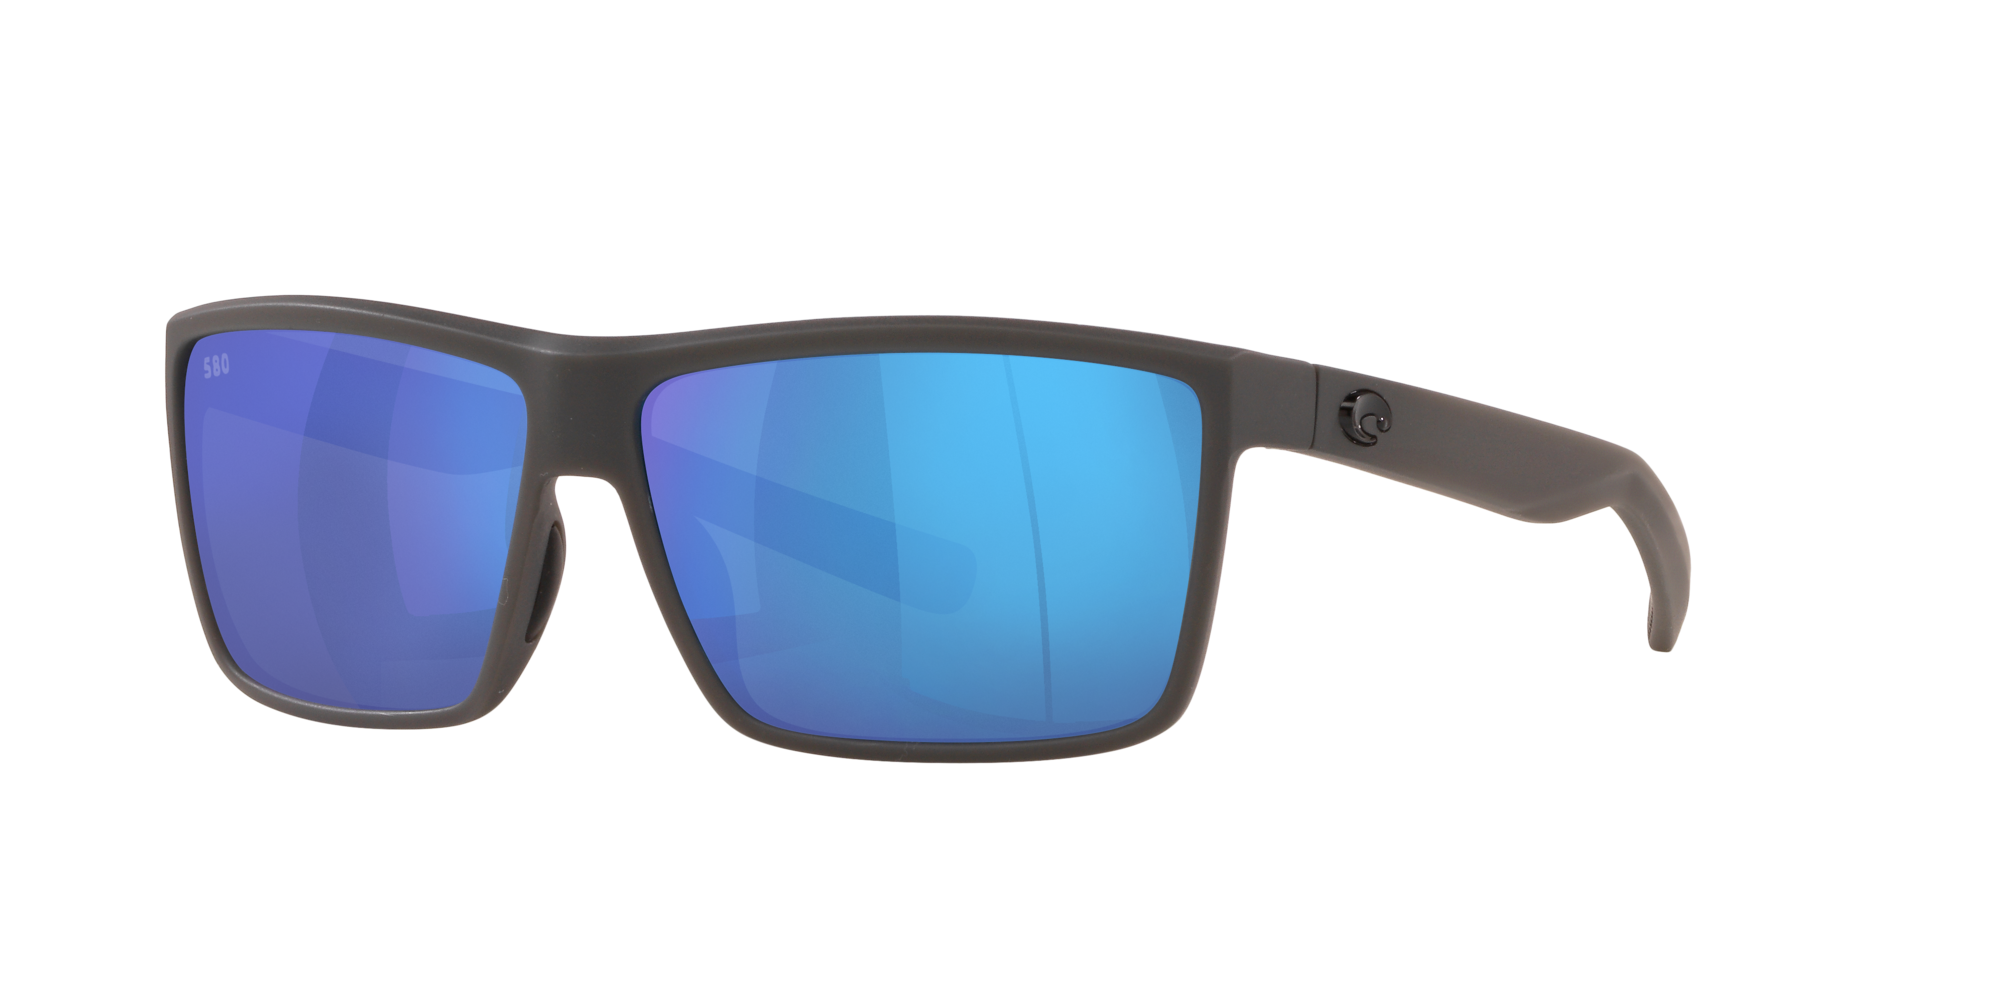 Buy Costa Del Mar Sunglasses Flash Sales, 55% OFF | www.hcb.cat